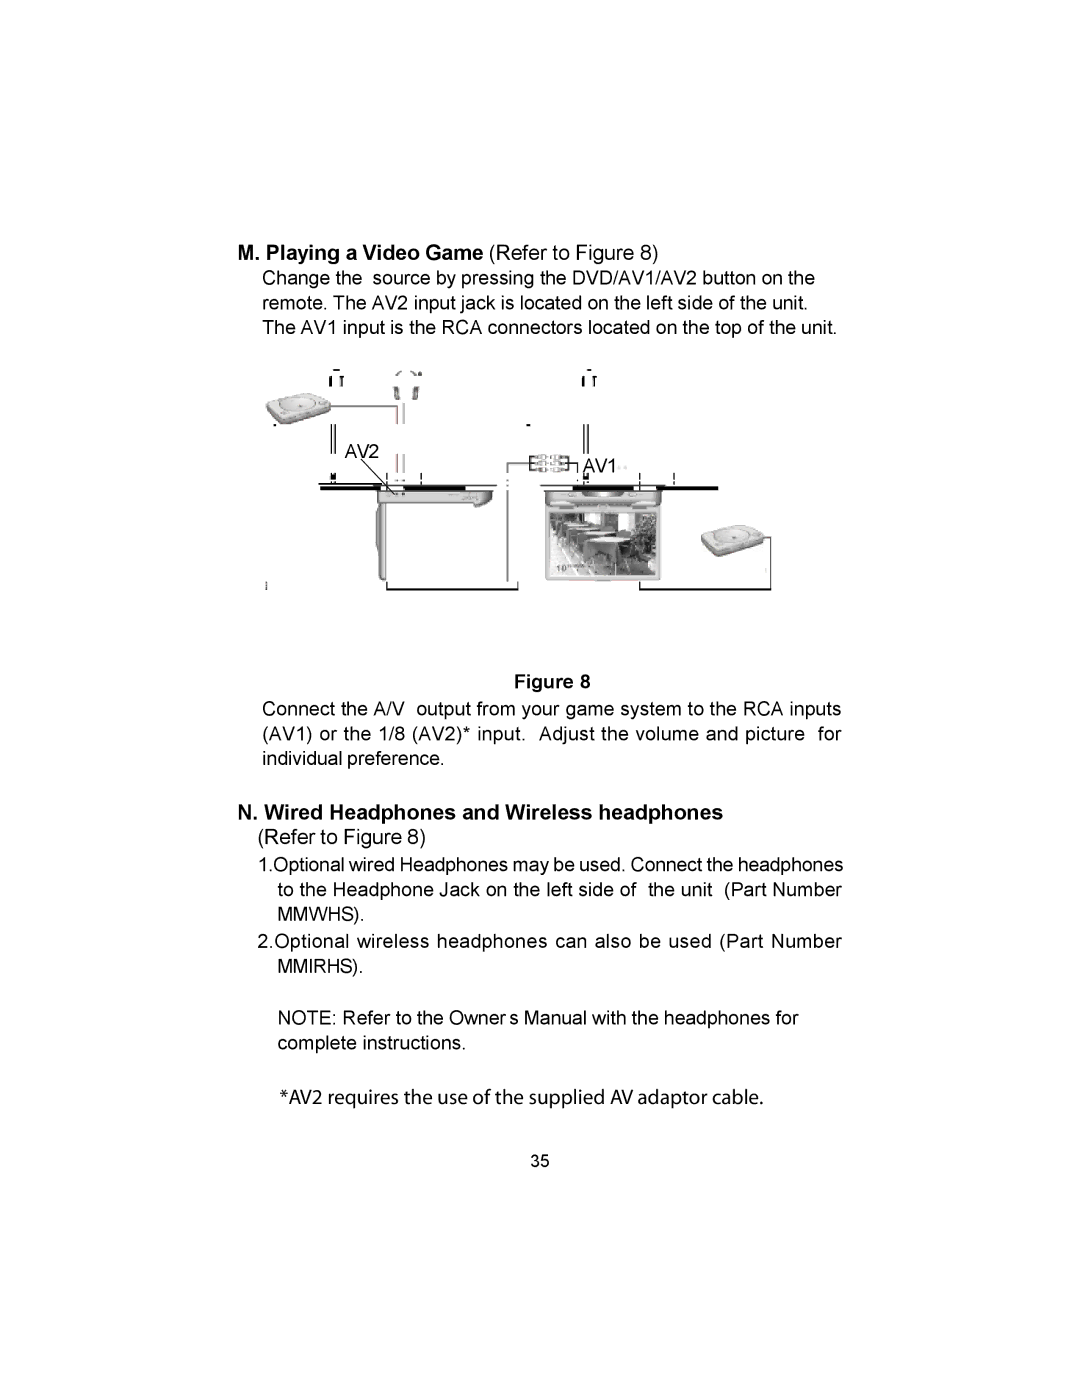 Audiovox MMD10 installation manual Playing a Video Game Refer to Figure, AV2AV1 